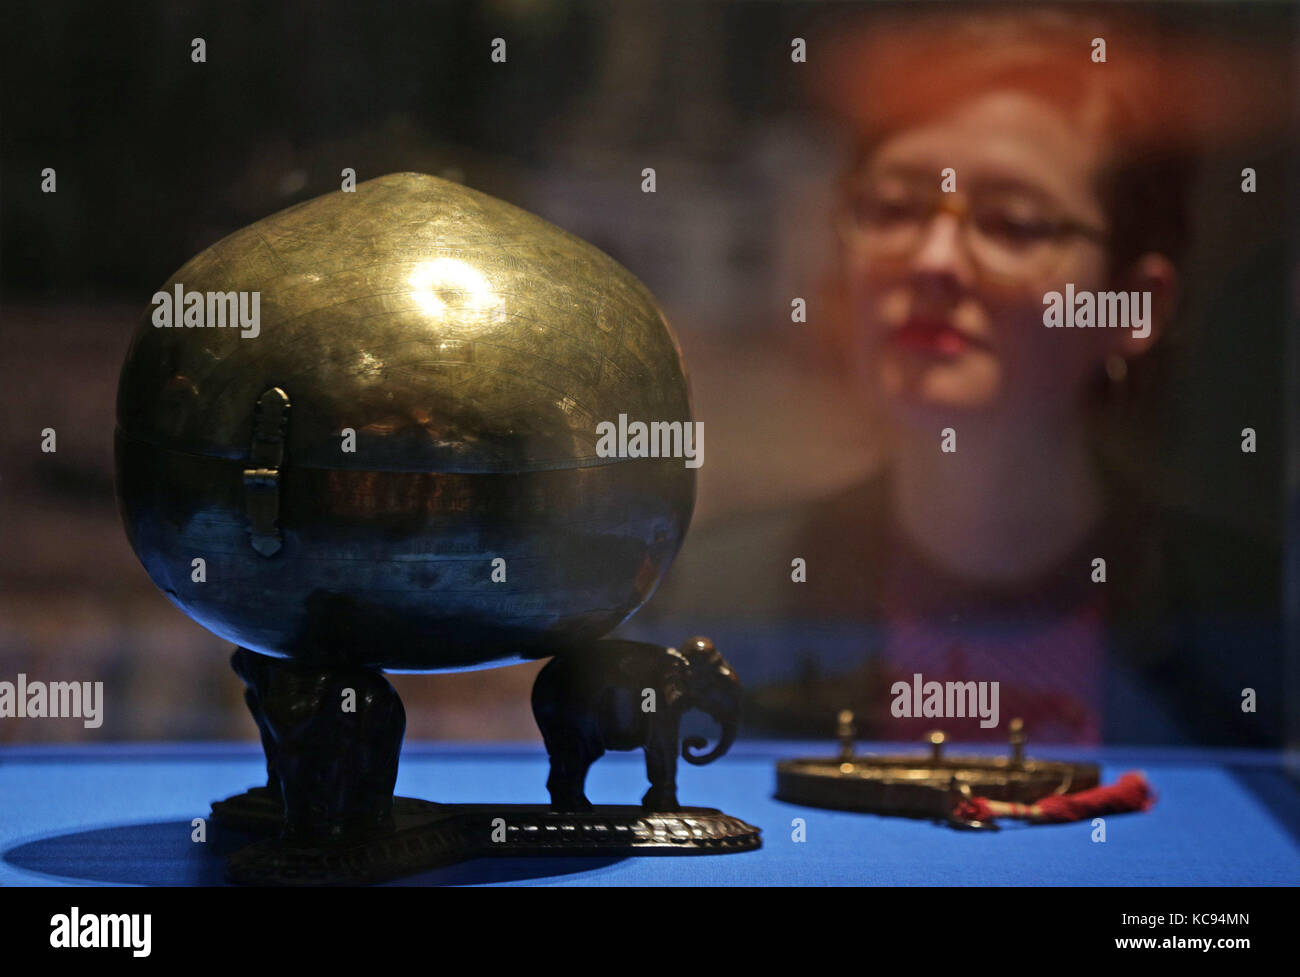 Un bhugola (1571) o "terra-ball' - un quasi sferiche scatola in metallo inciso con una mappa del mondo, comunemente utilizzati come contenitori per la conservazione di ingredienti quali betel, calce e noci di arec dado, in mostra presso il museo della scienza di illuminare l'india esposizioni presso il Science Museum di Londra. Foto Stock